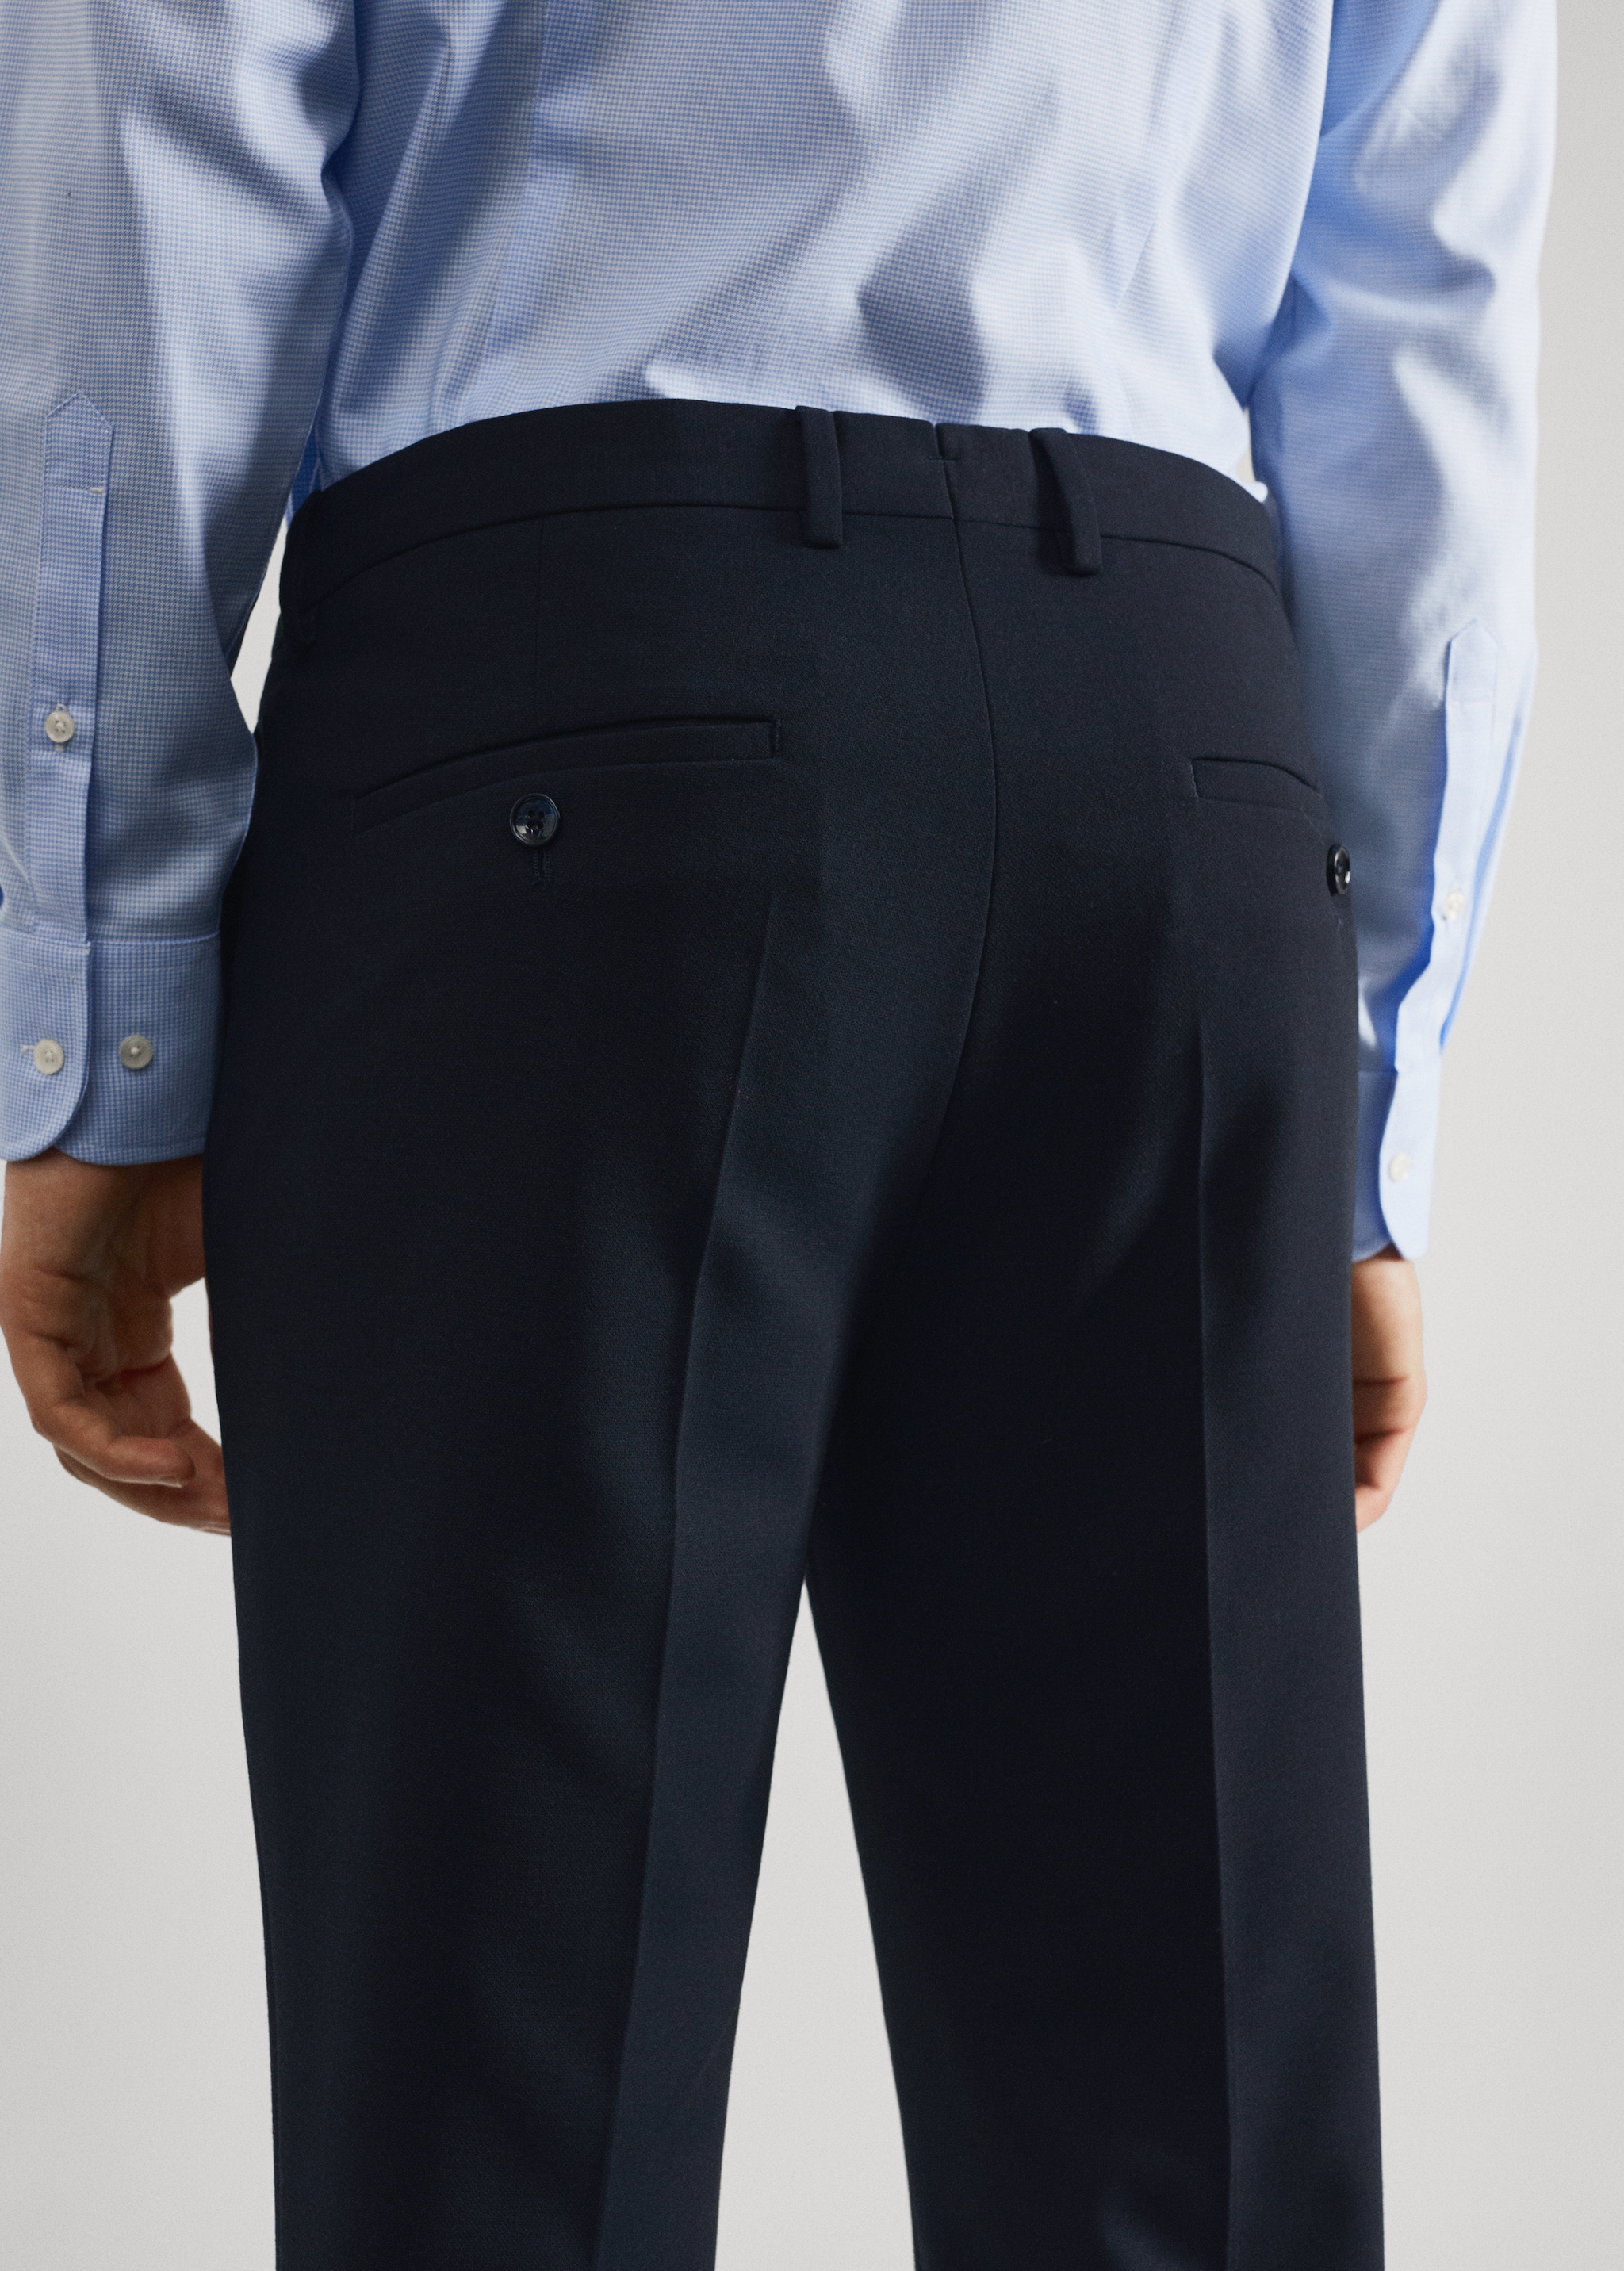 Pantalons vestir súper slim fit - Detall de l'article 6